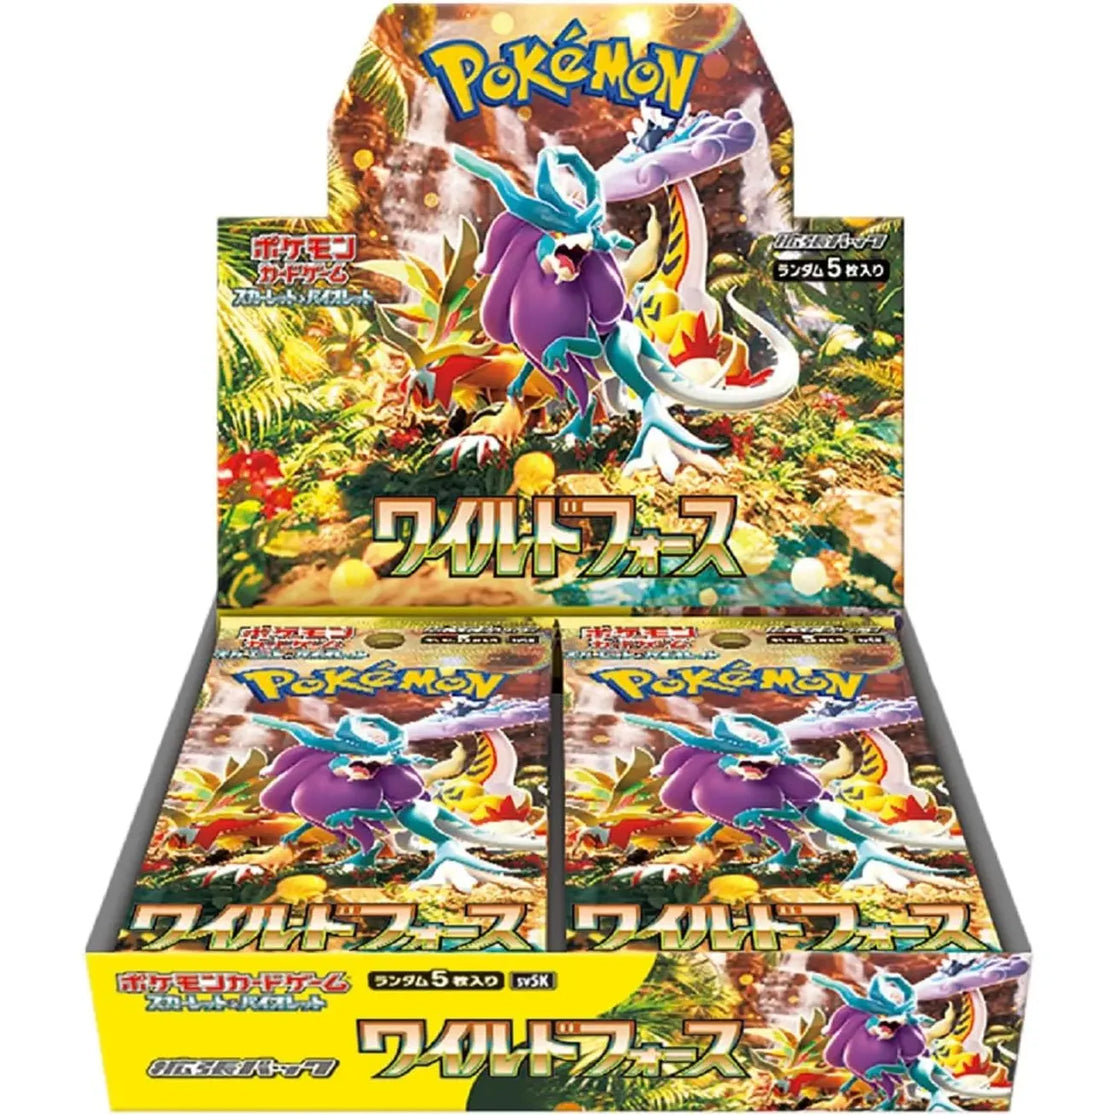 Pokémon TCG: Scarlet & Violet sv5k – Wild Force Booster Box (Japanese)